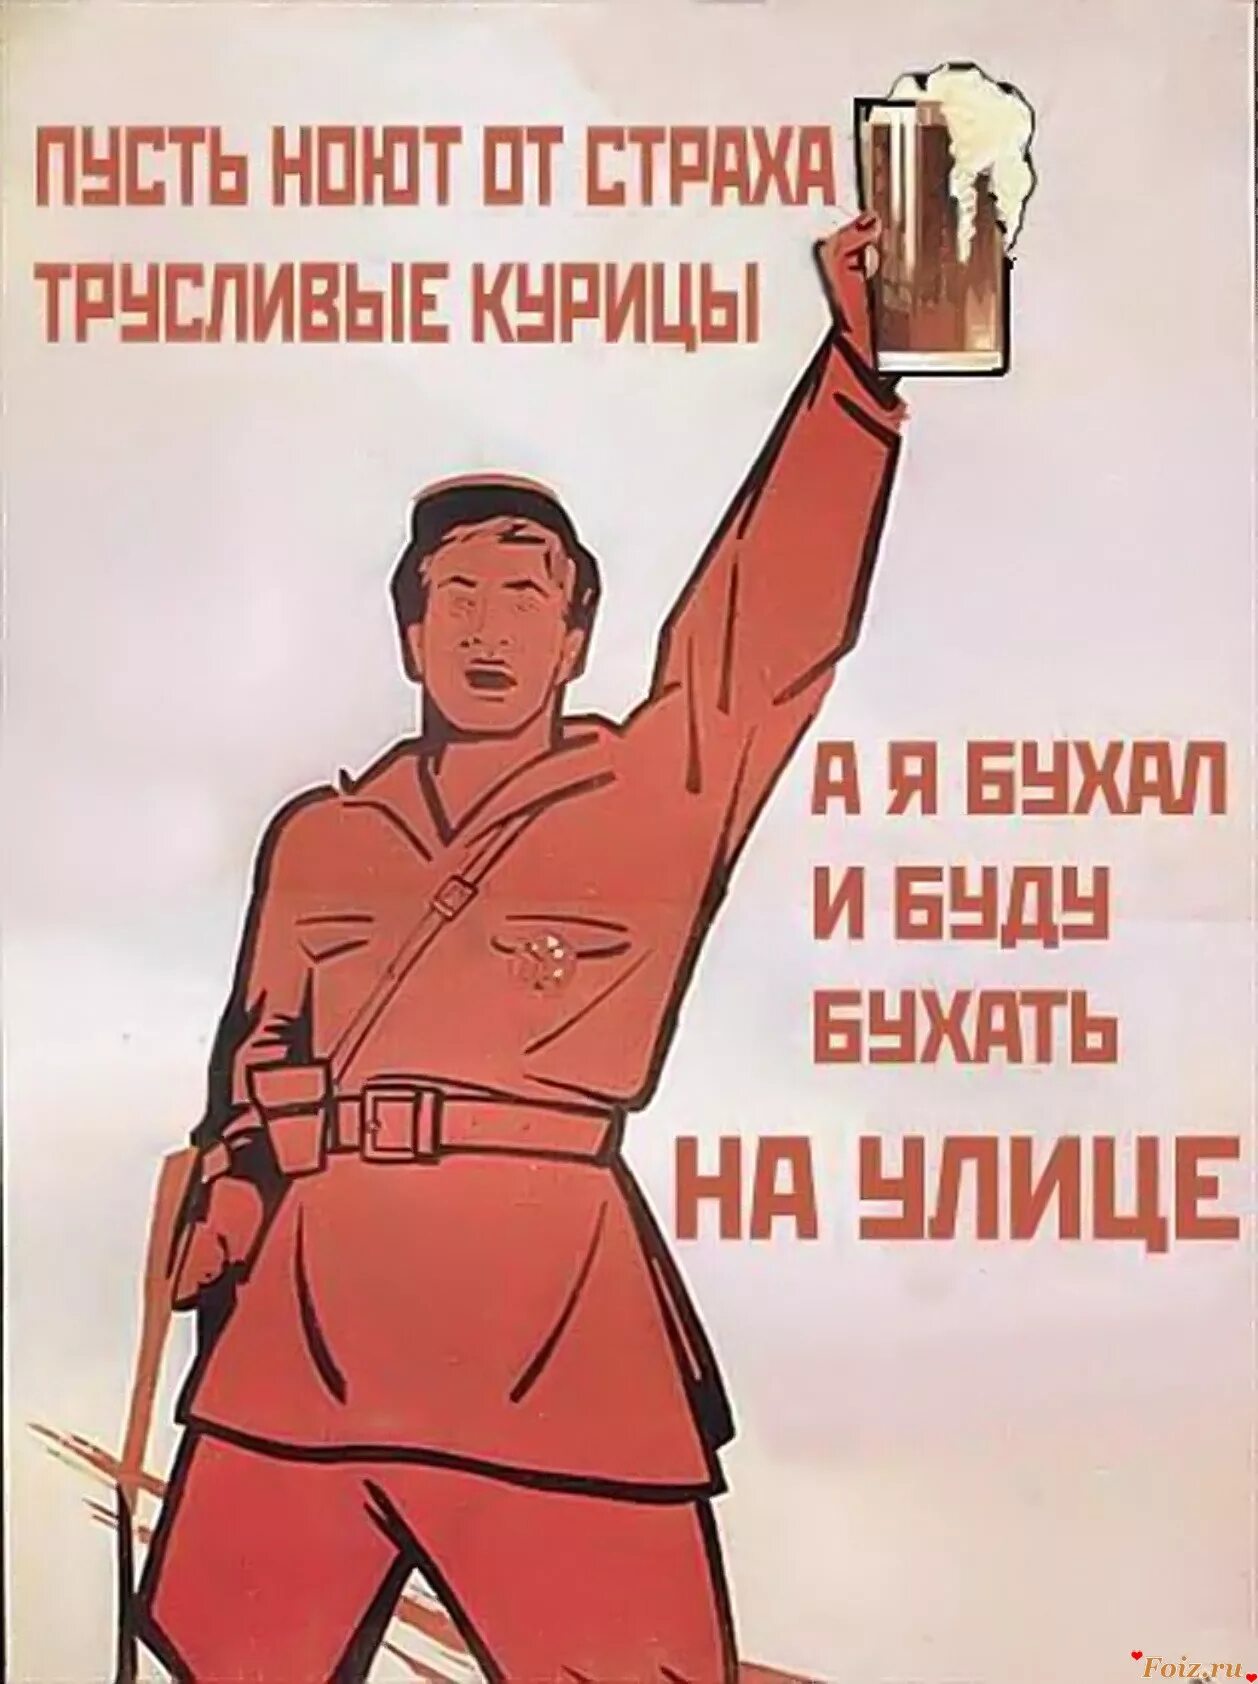 Я в рабочие пойду плакаты. Прикольные плакаты. Советские плакаты. Плакаты с лозунгами. Прикольные советские плакаты.